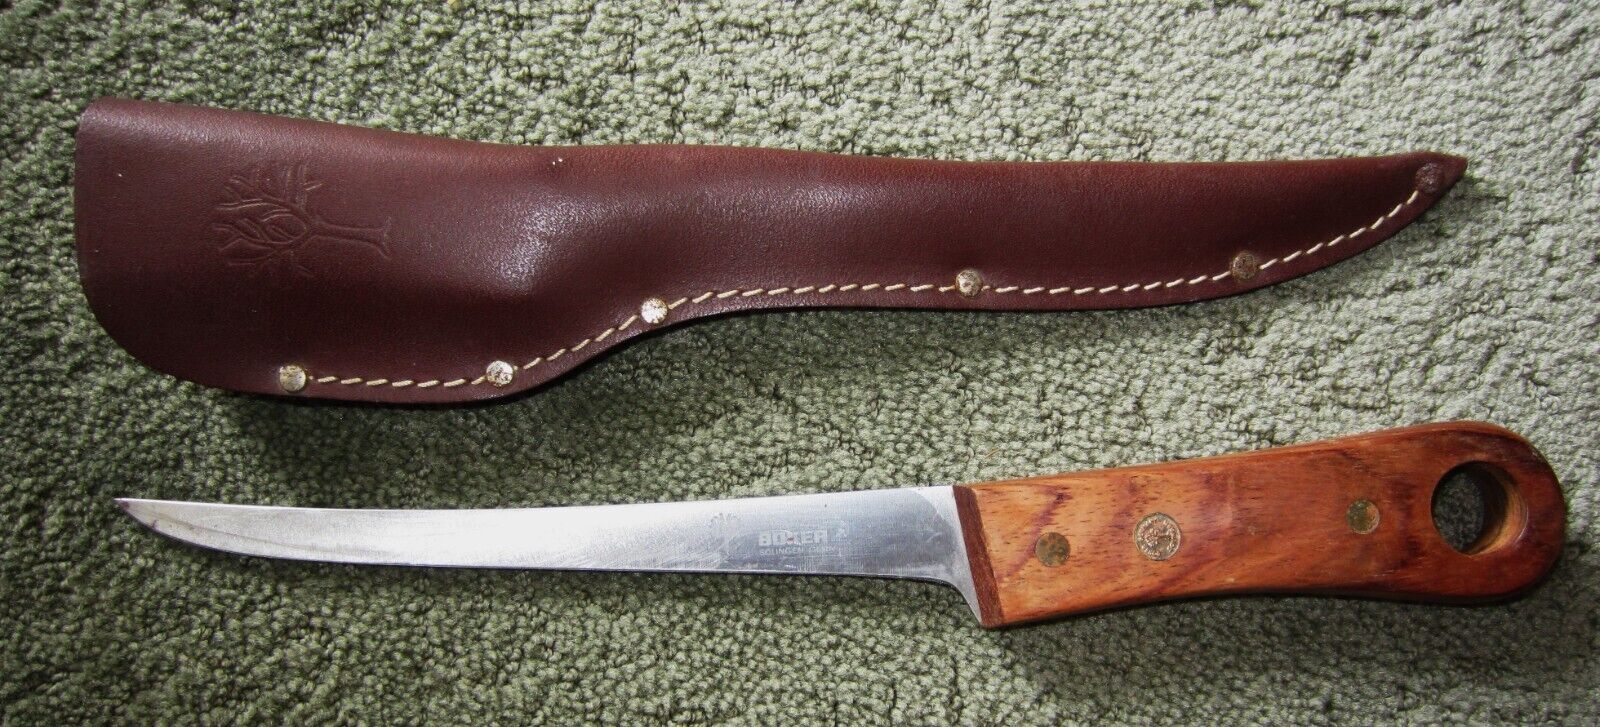 Boker F8S Stainless Solingen Fillet Knife Vintage Germany